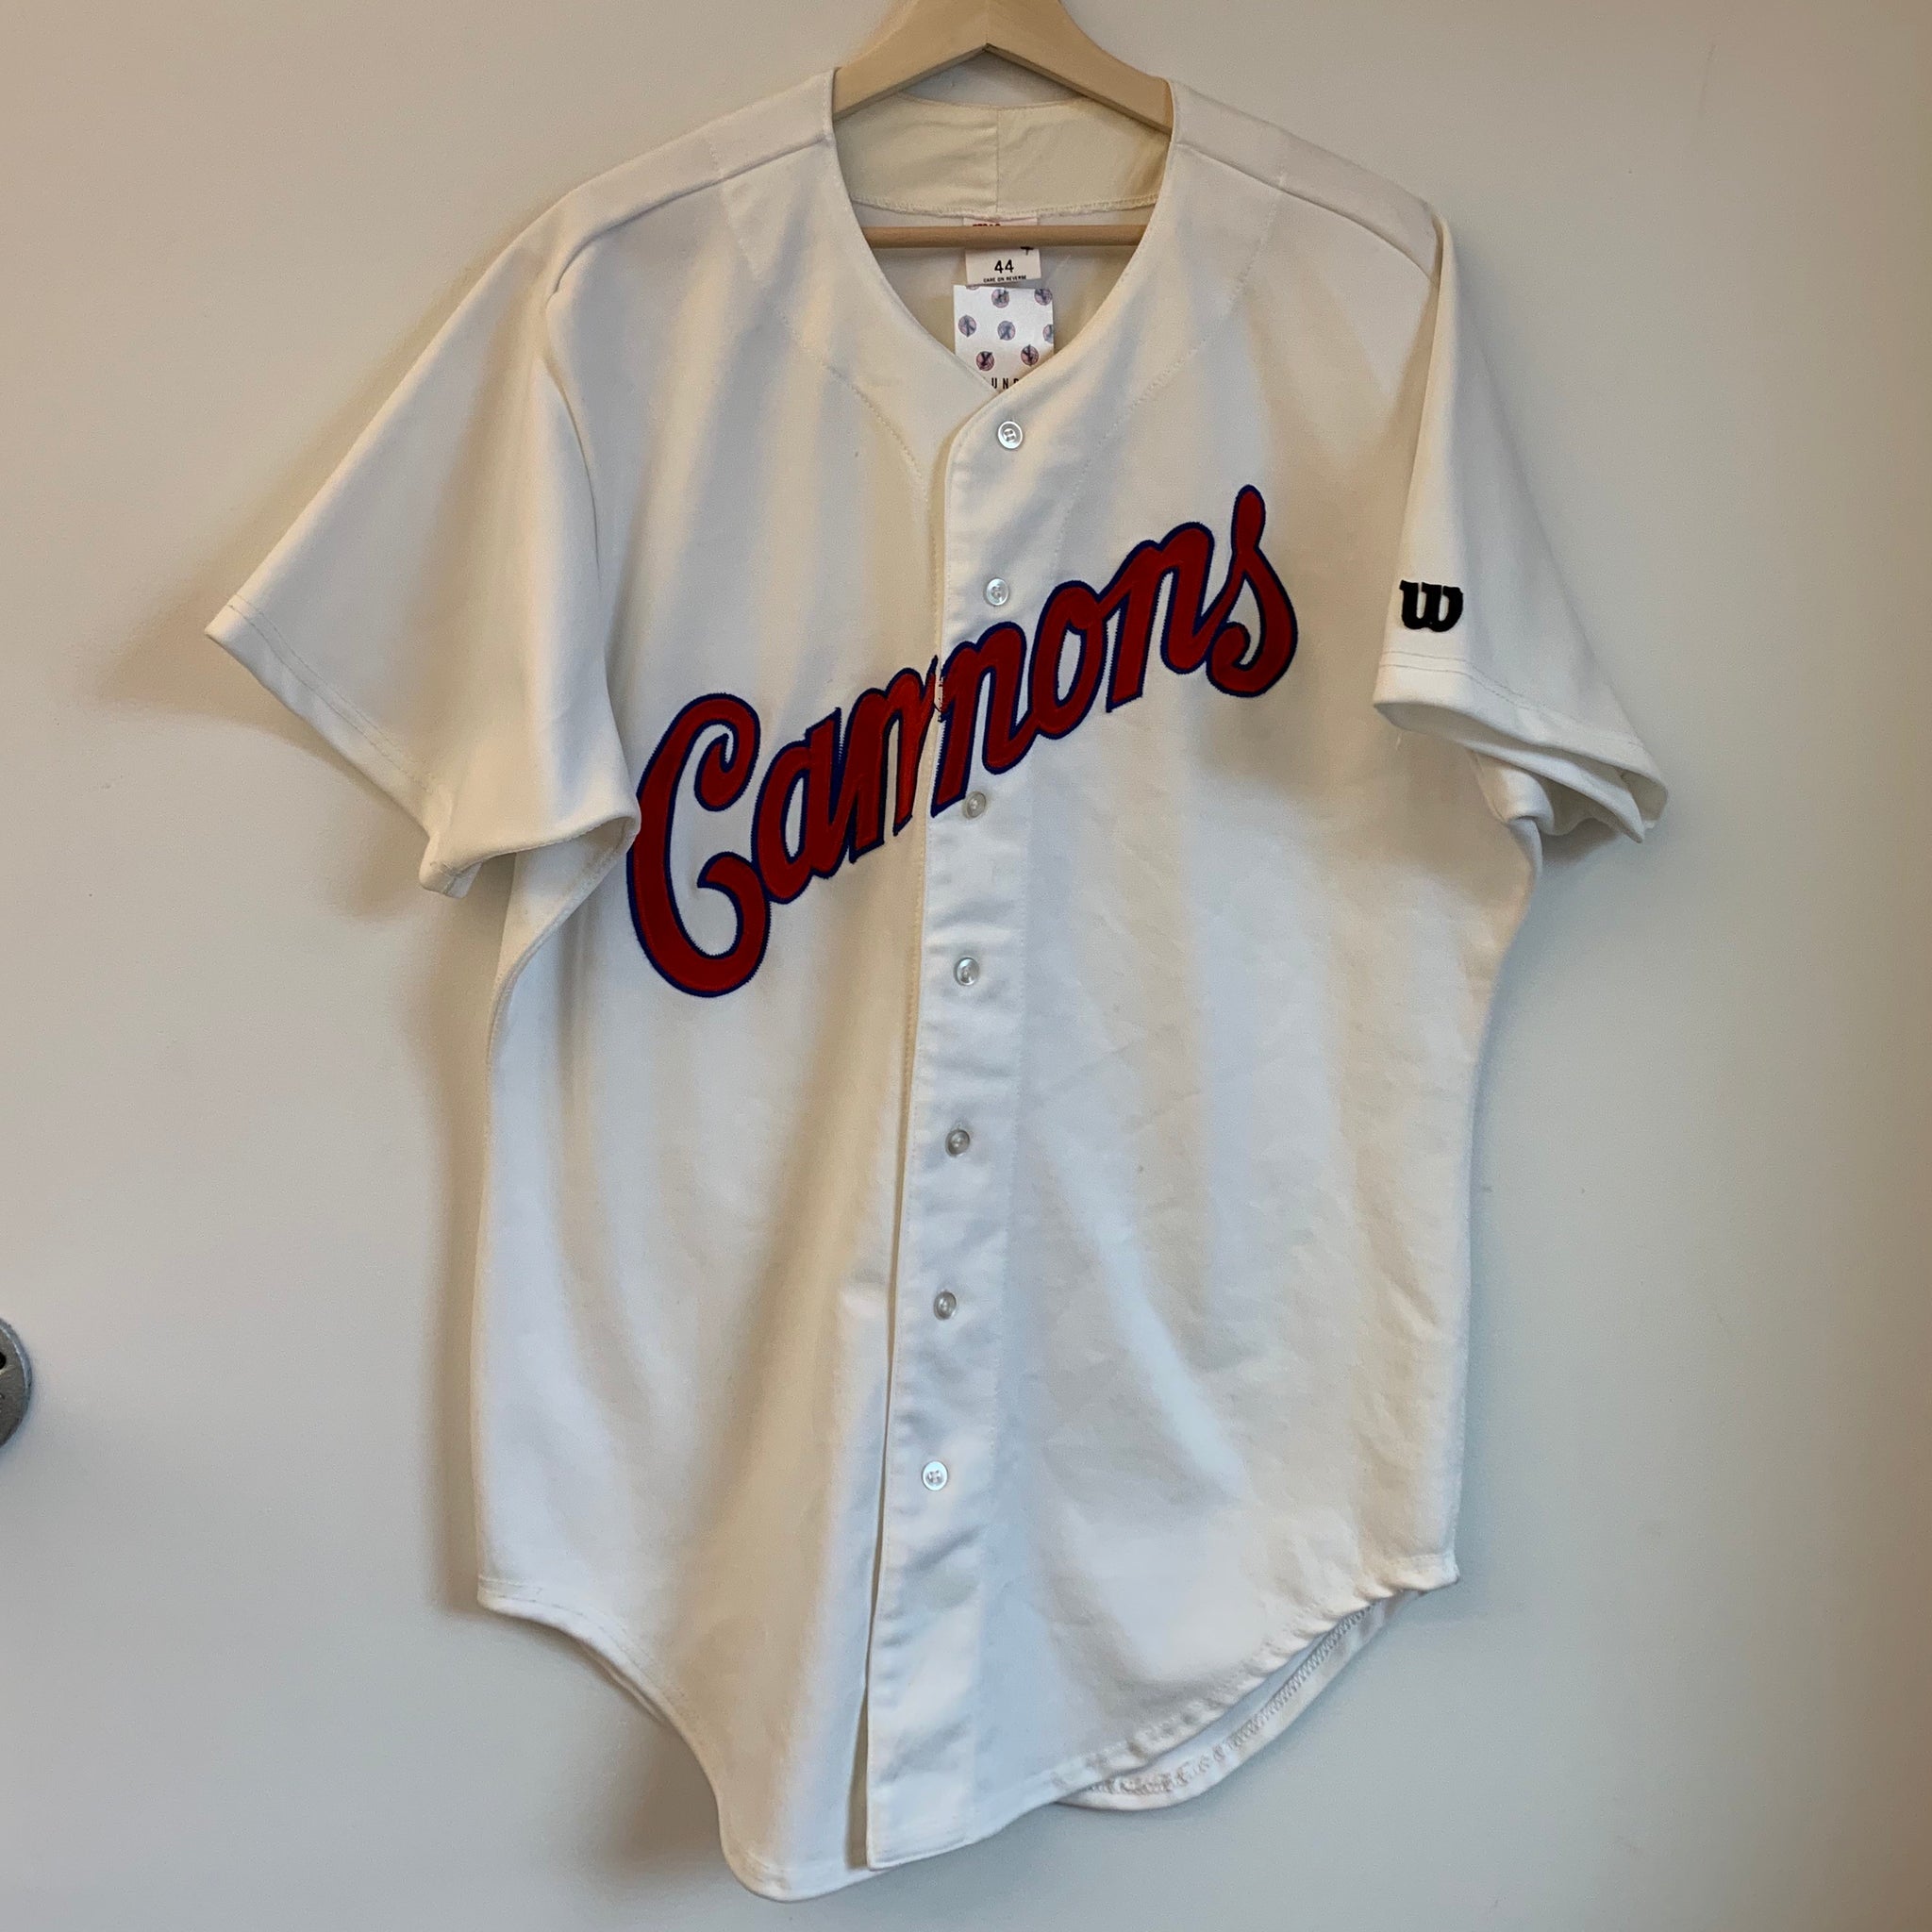 retro baseball jerseys cheap